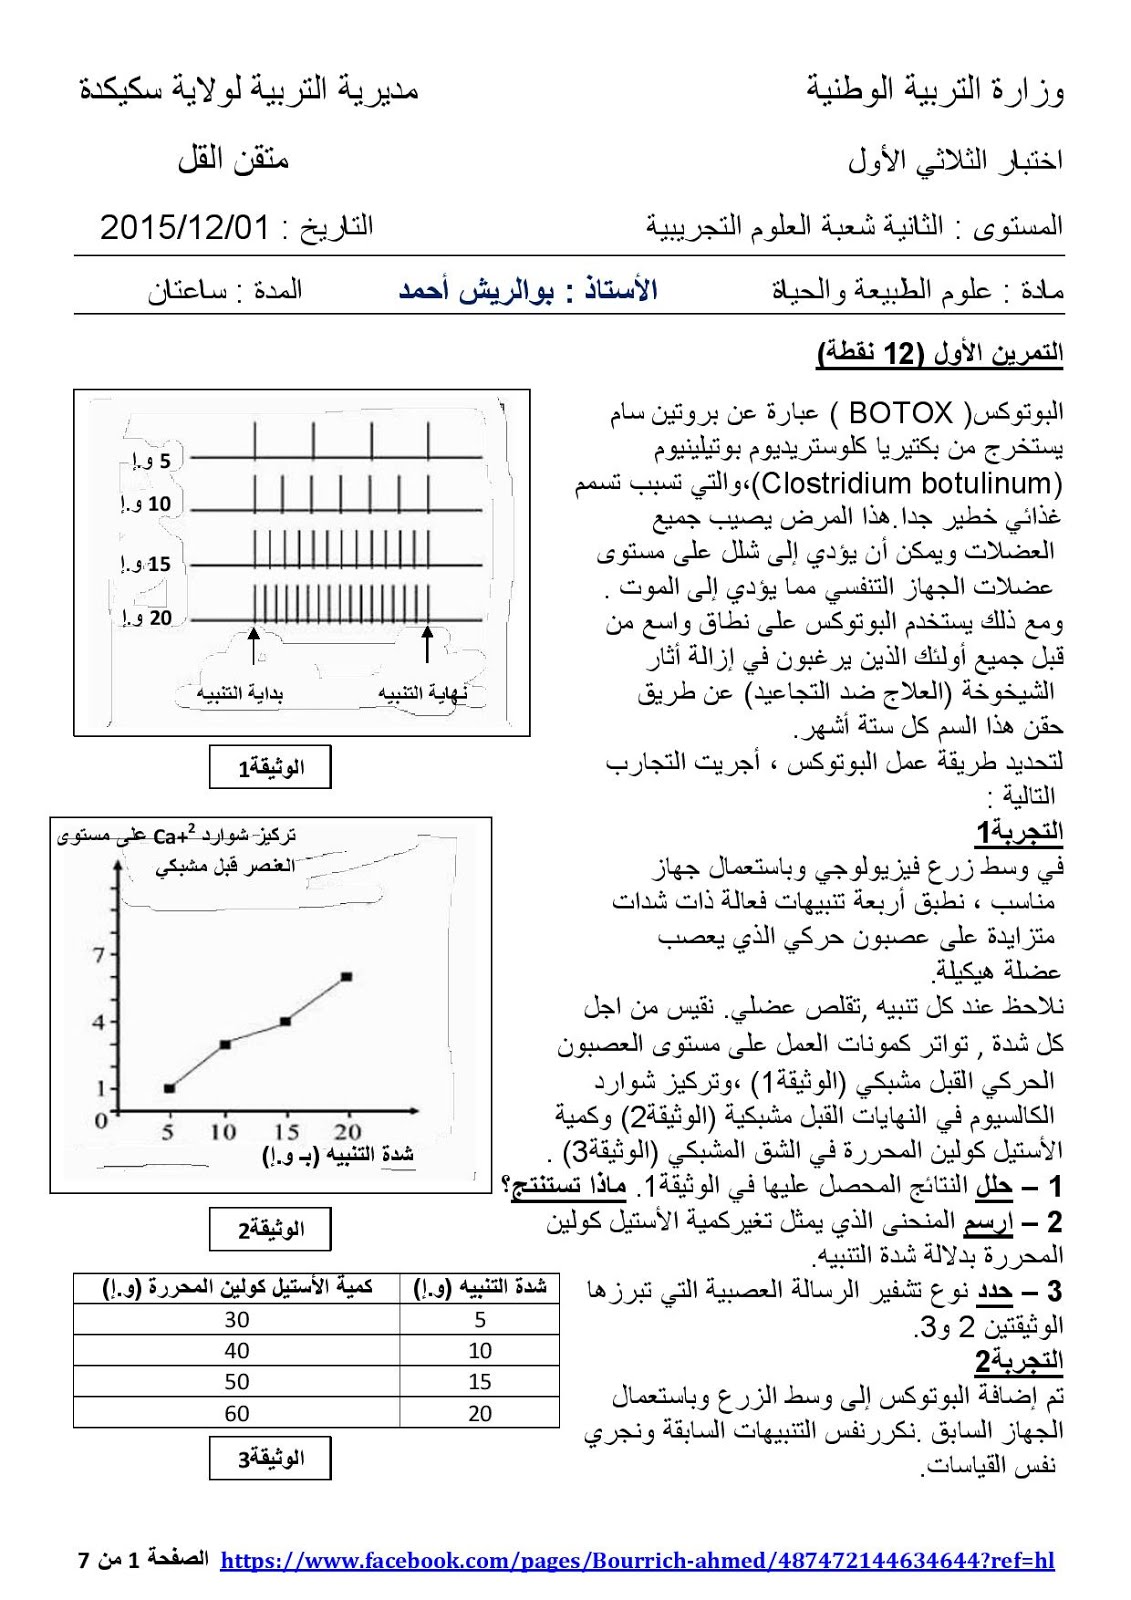 الموقع الاول للتعليم في الجزائر: اختبار العلوم الطبيعية للسنة الثانية ثانوي  الفصل الأول مع التصحيح النموذجي شعبة العلوم التجريبية